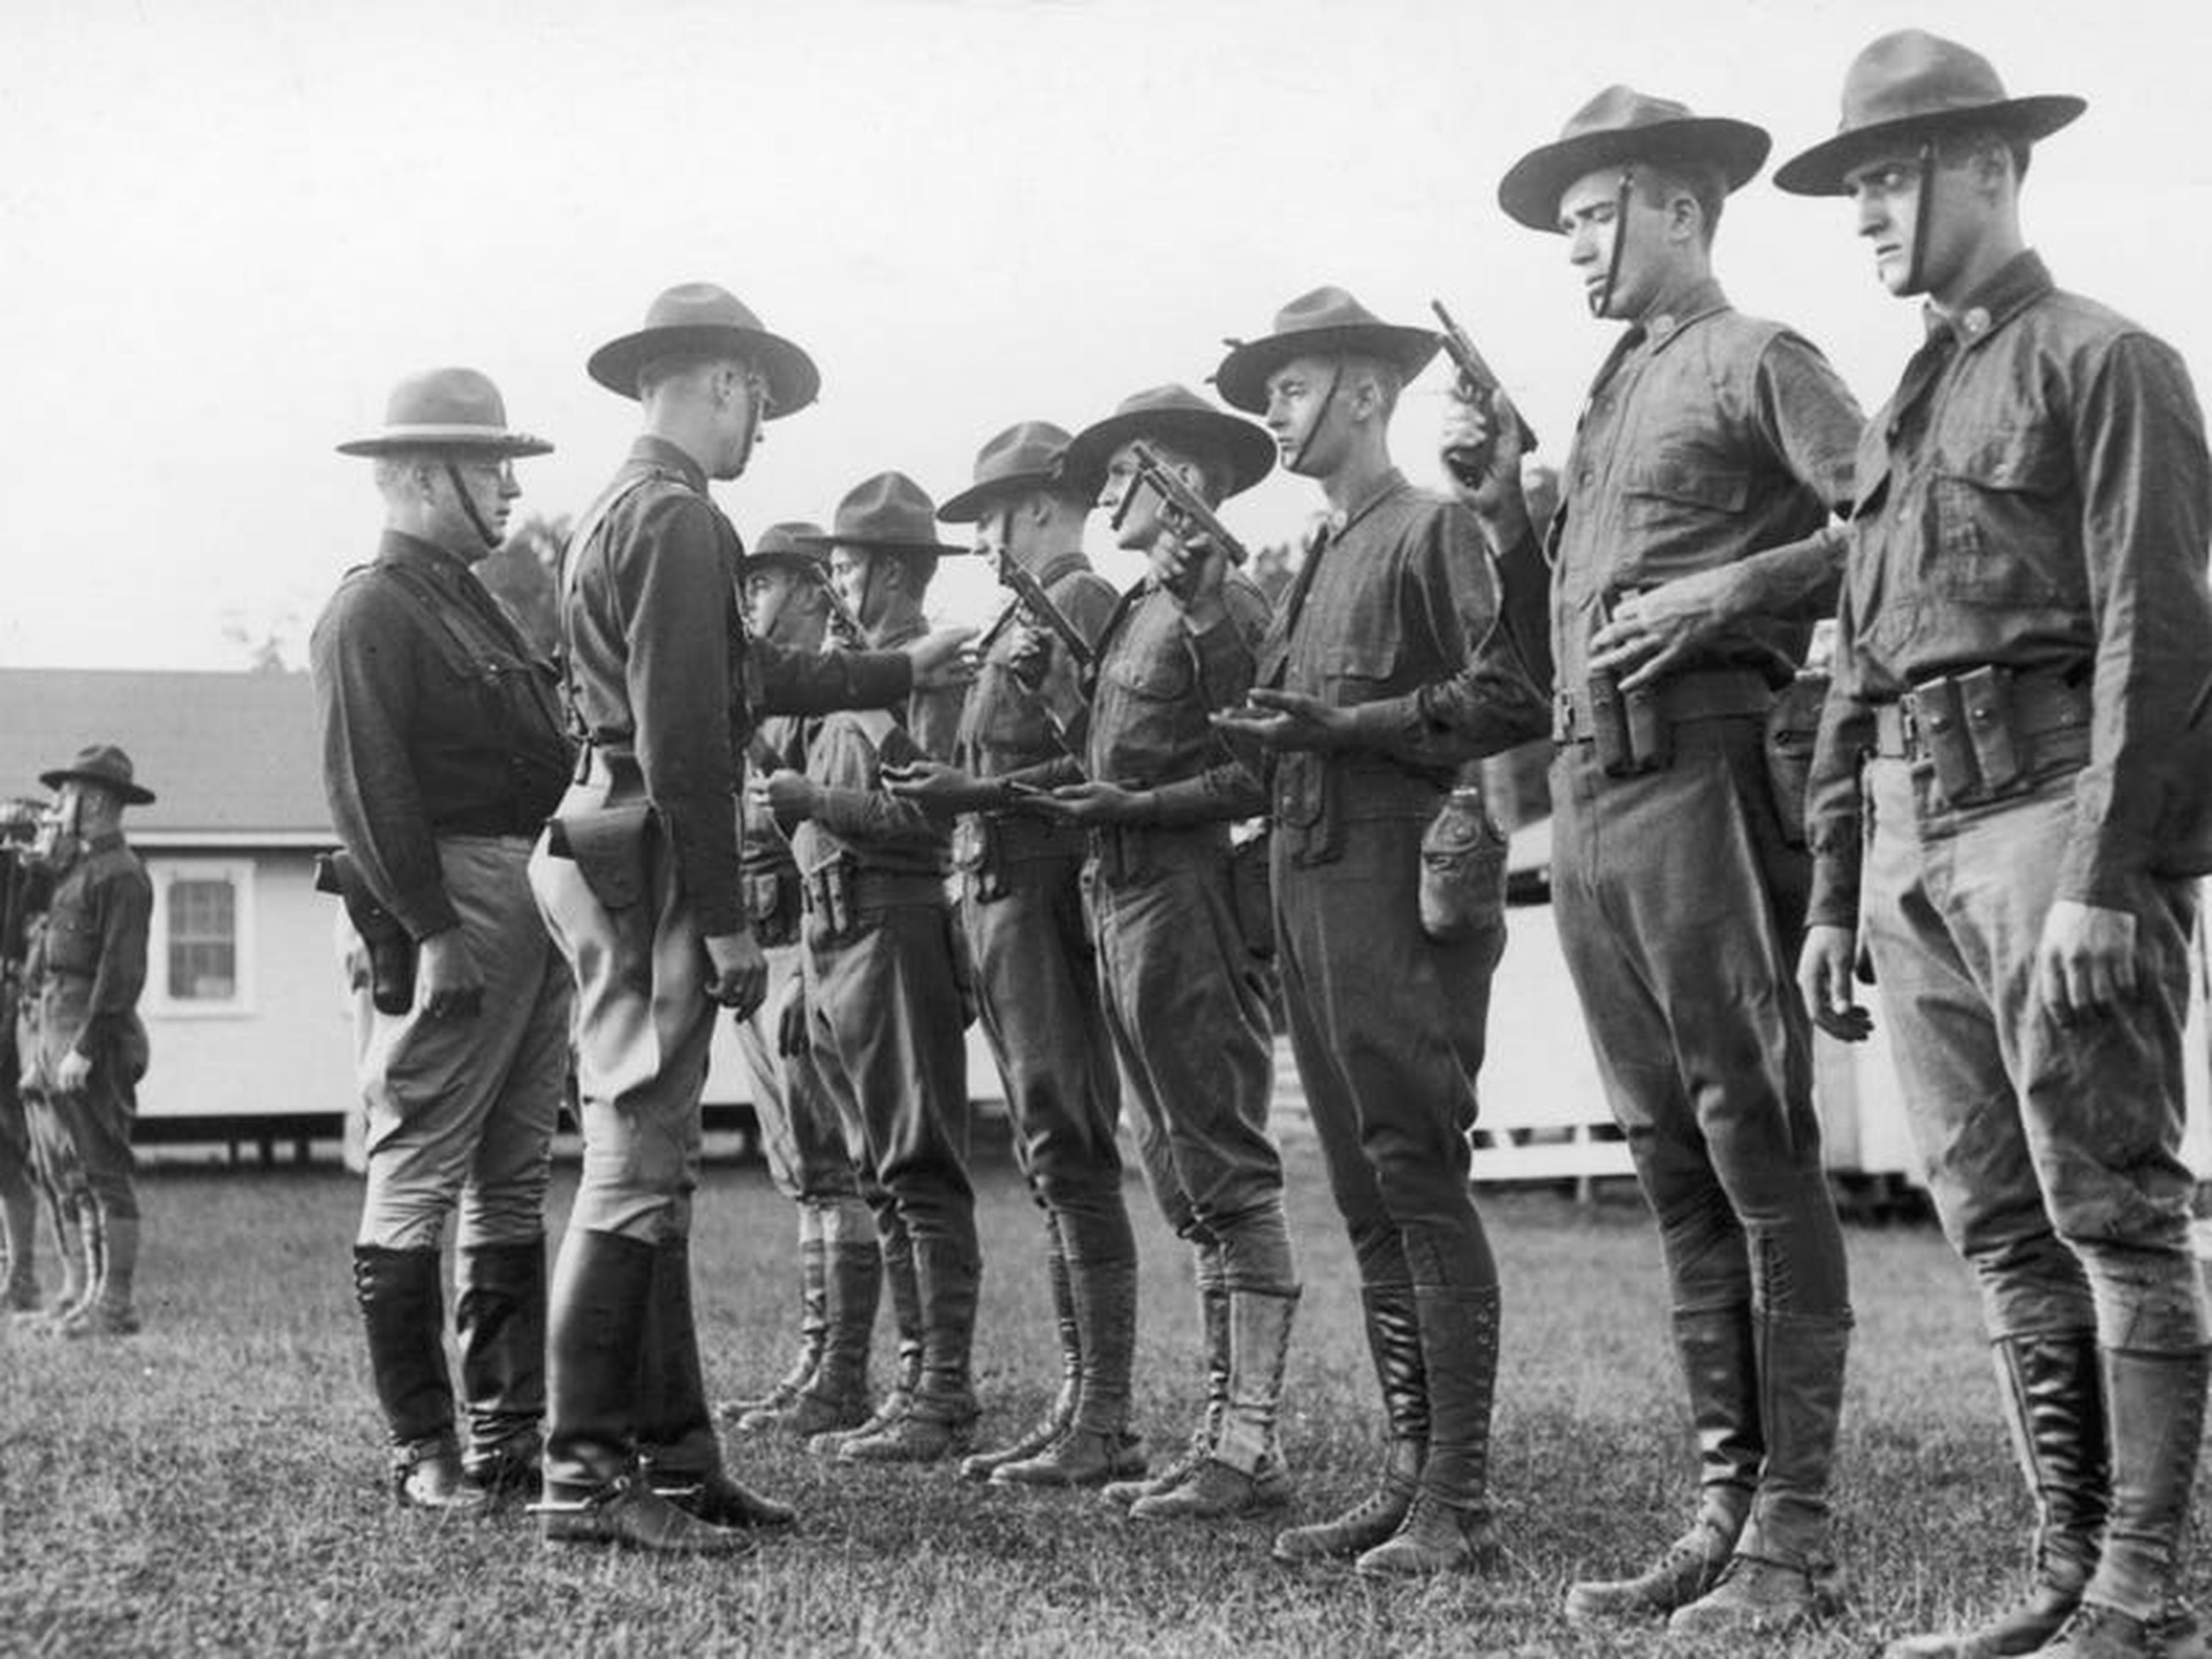 El ejército de Estados Unidos fue pionero en un sistema de 'calificación de méritos' para evaluar a los soldados durante la Primera Guerra Mundial.